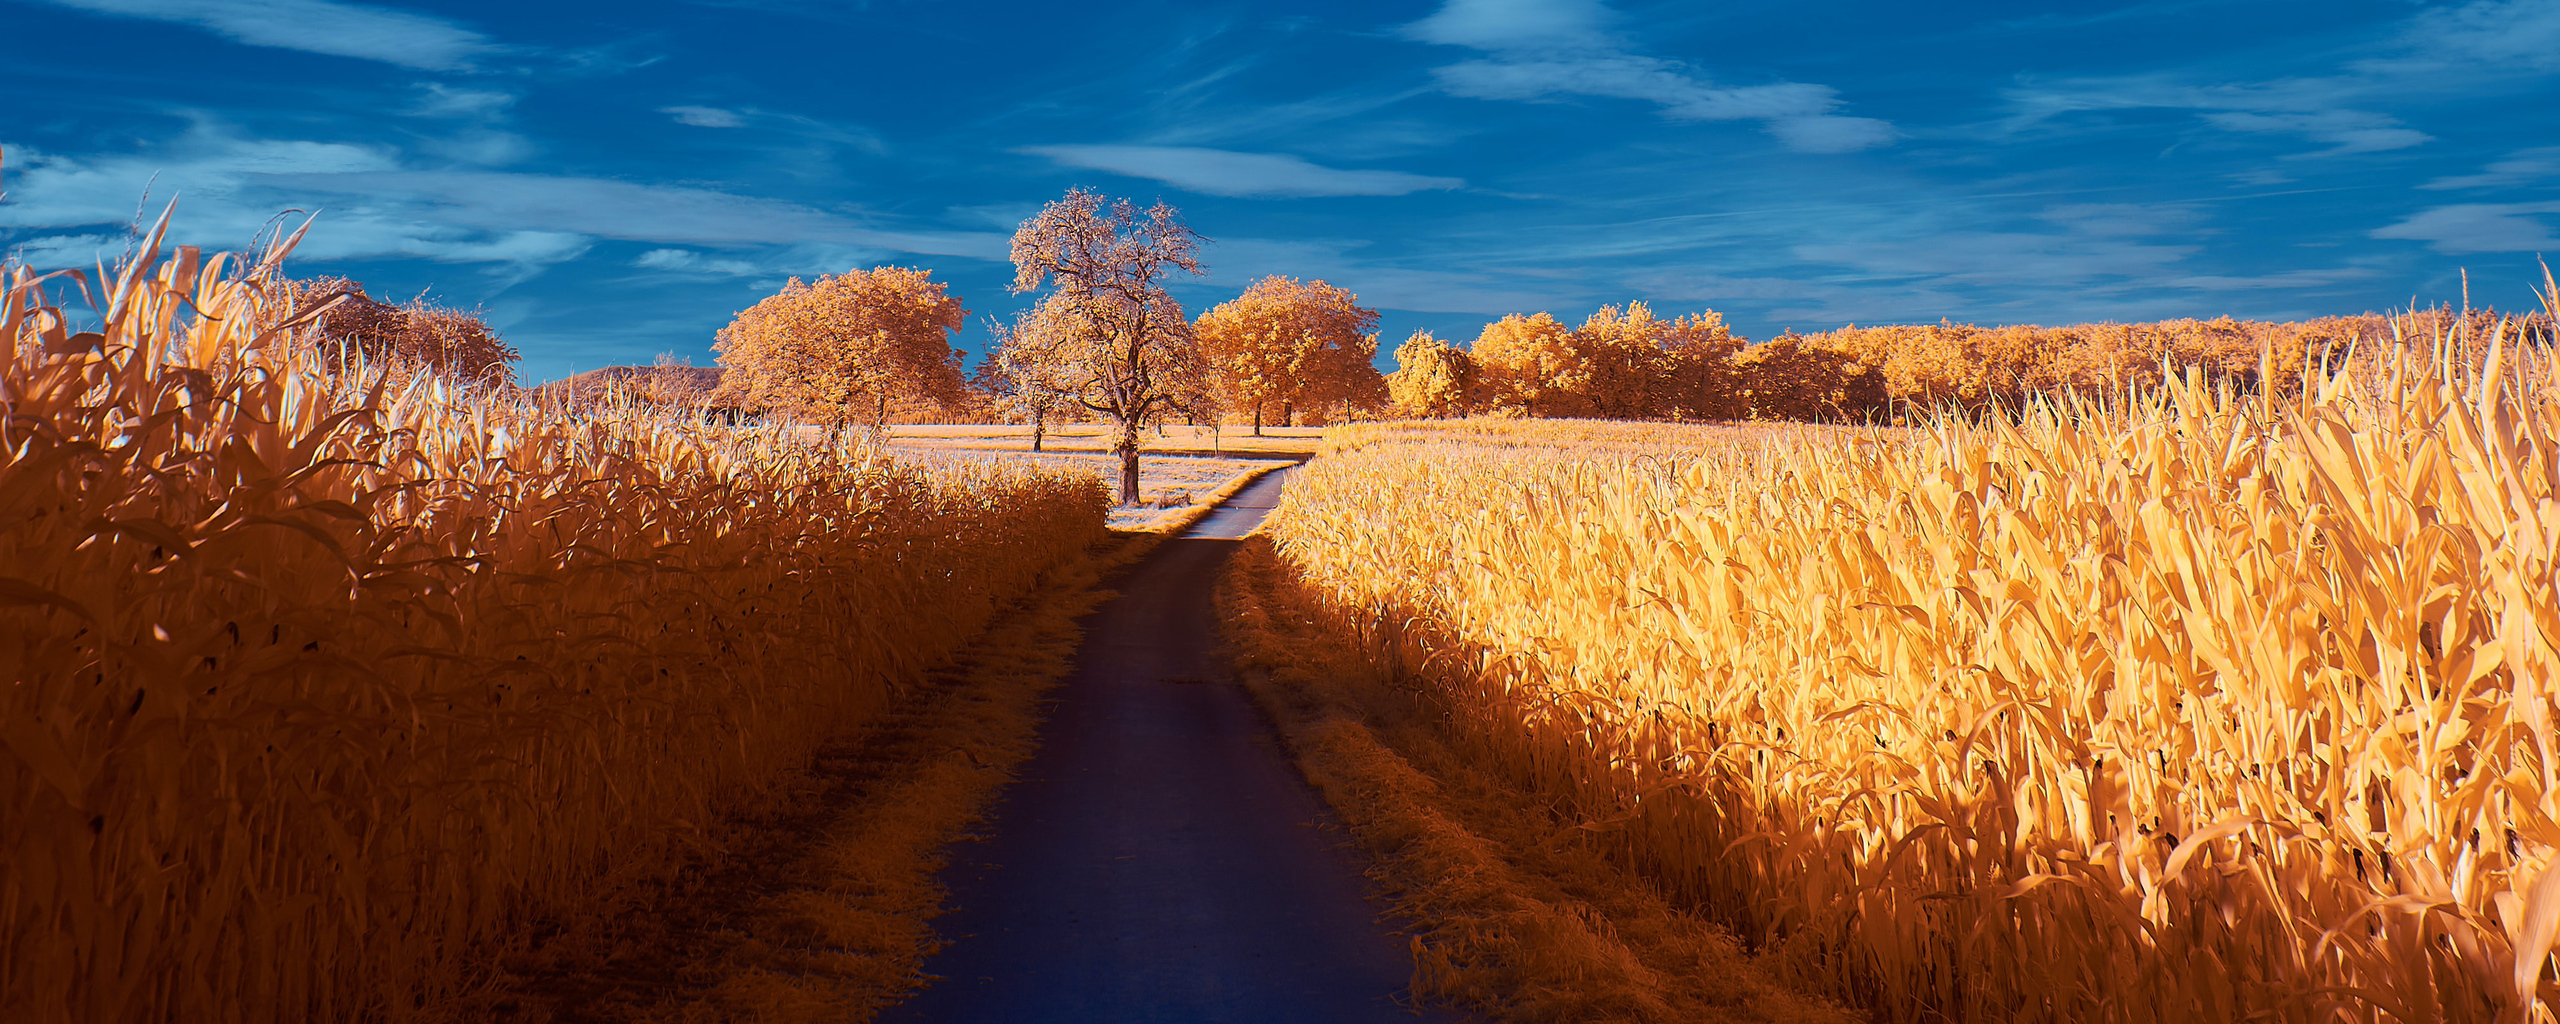 road-autumn-4k-mi.jpg